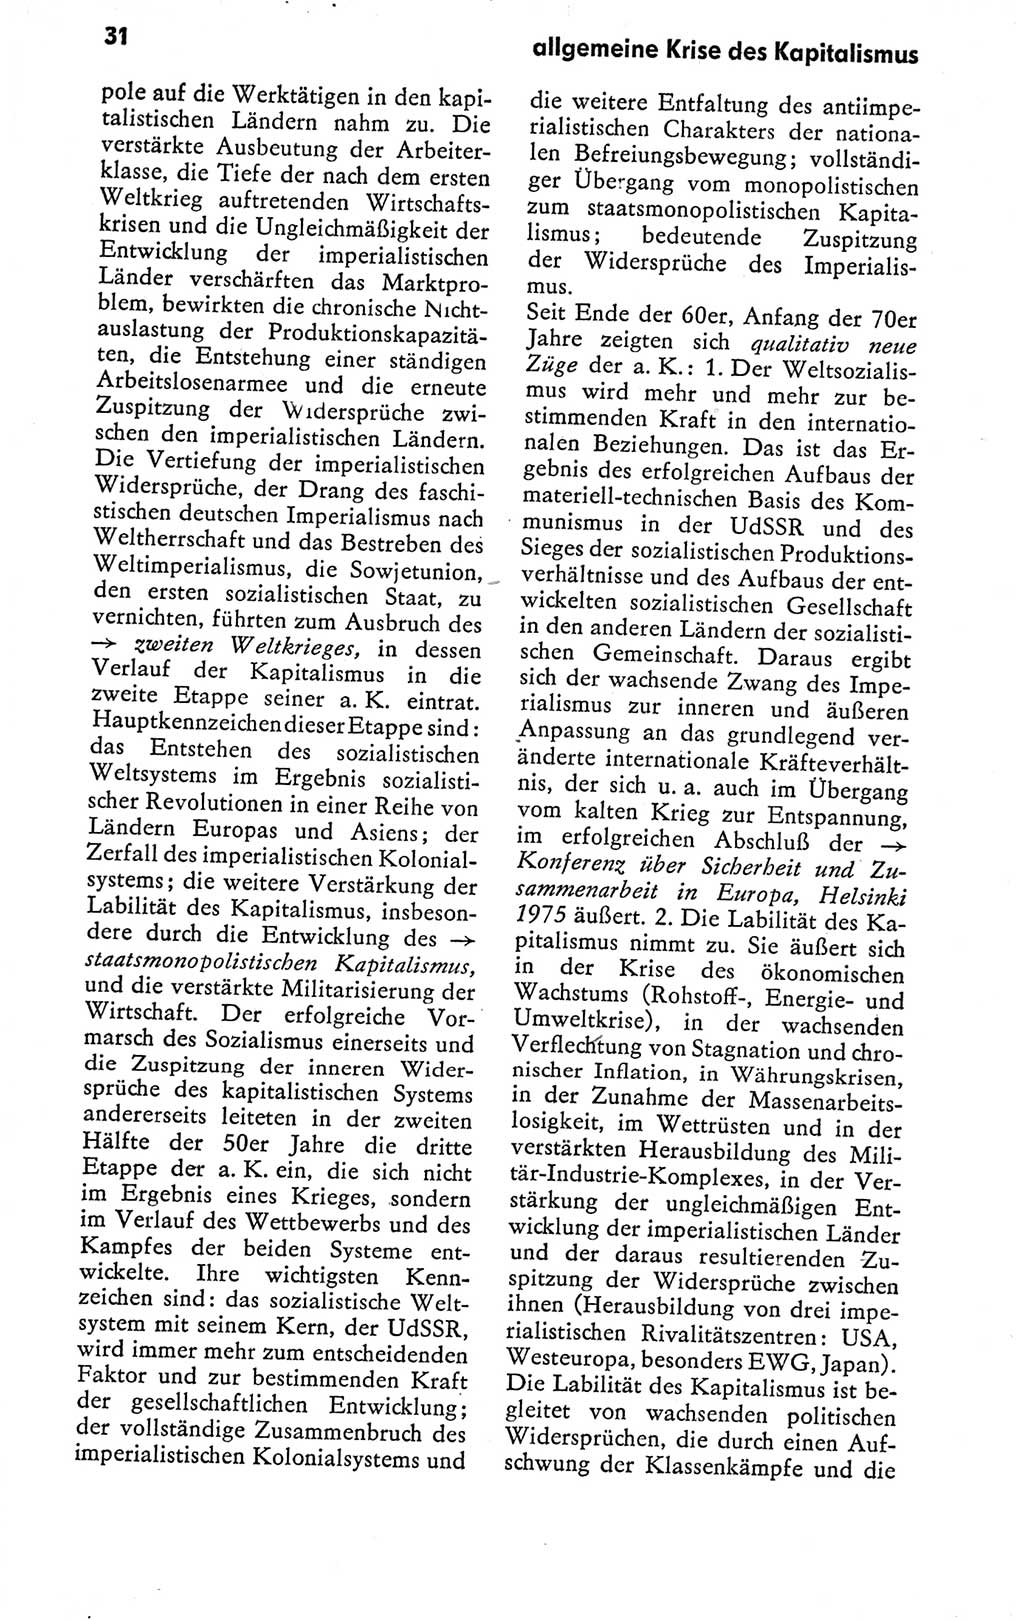 Kleines politisches Wörterbuch [Deutsche Demokratische Republik (DDR)] 1978, Seite 31 (Kl. pol. Wb. DDR 1978, S. 31)